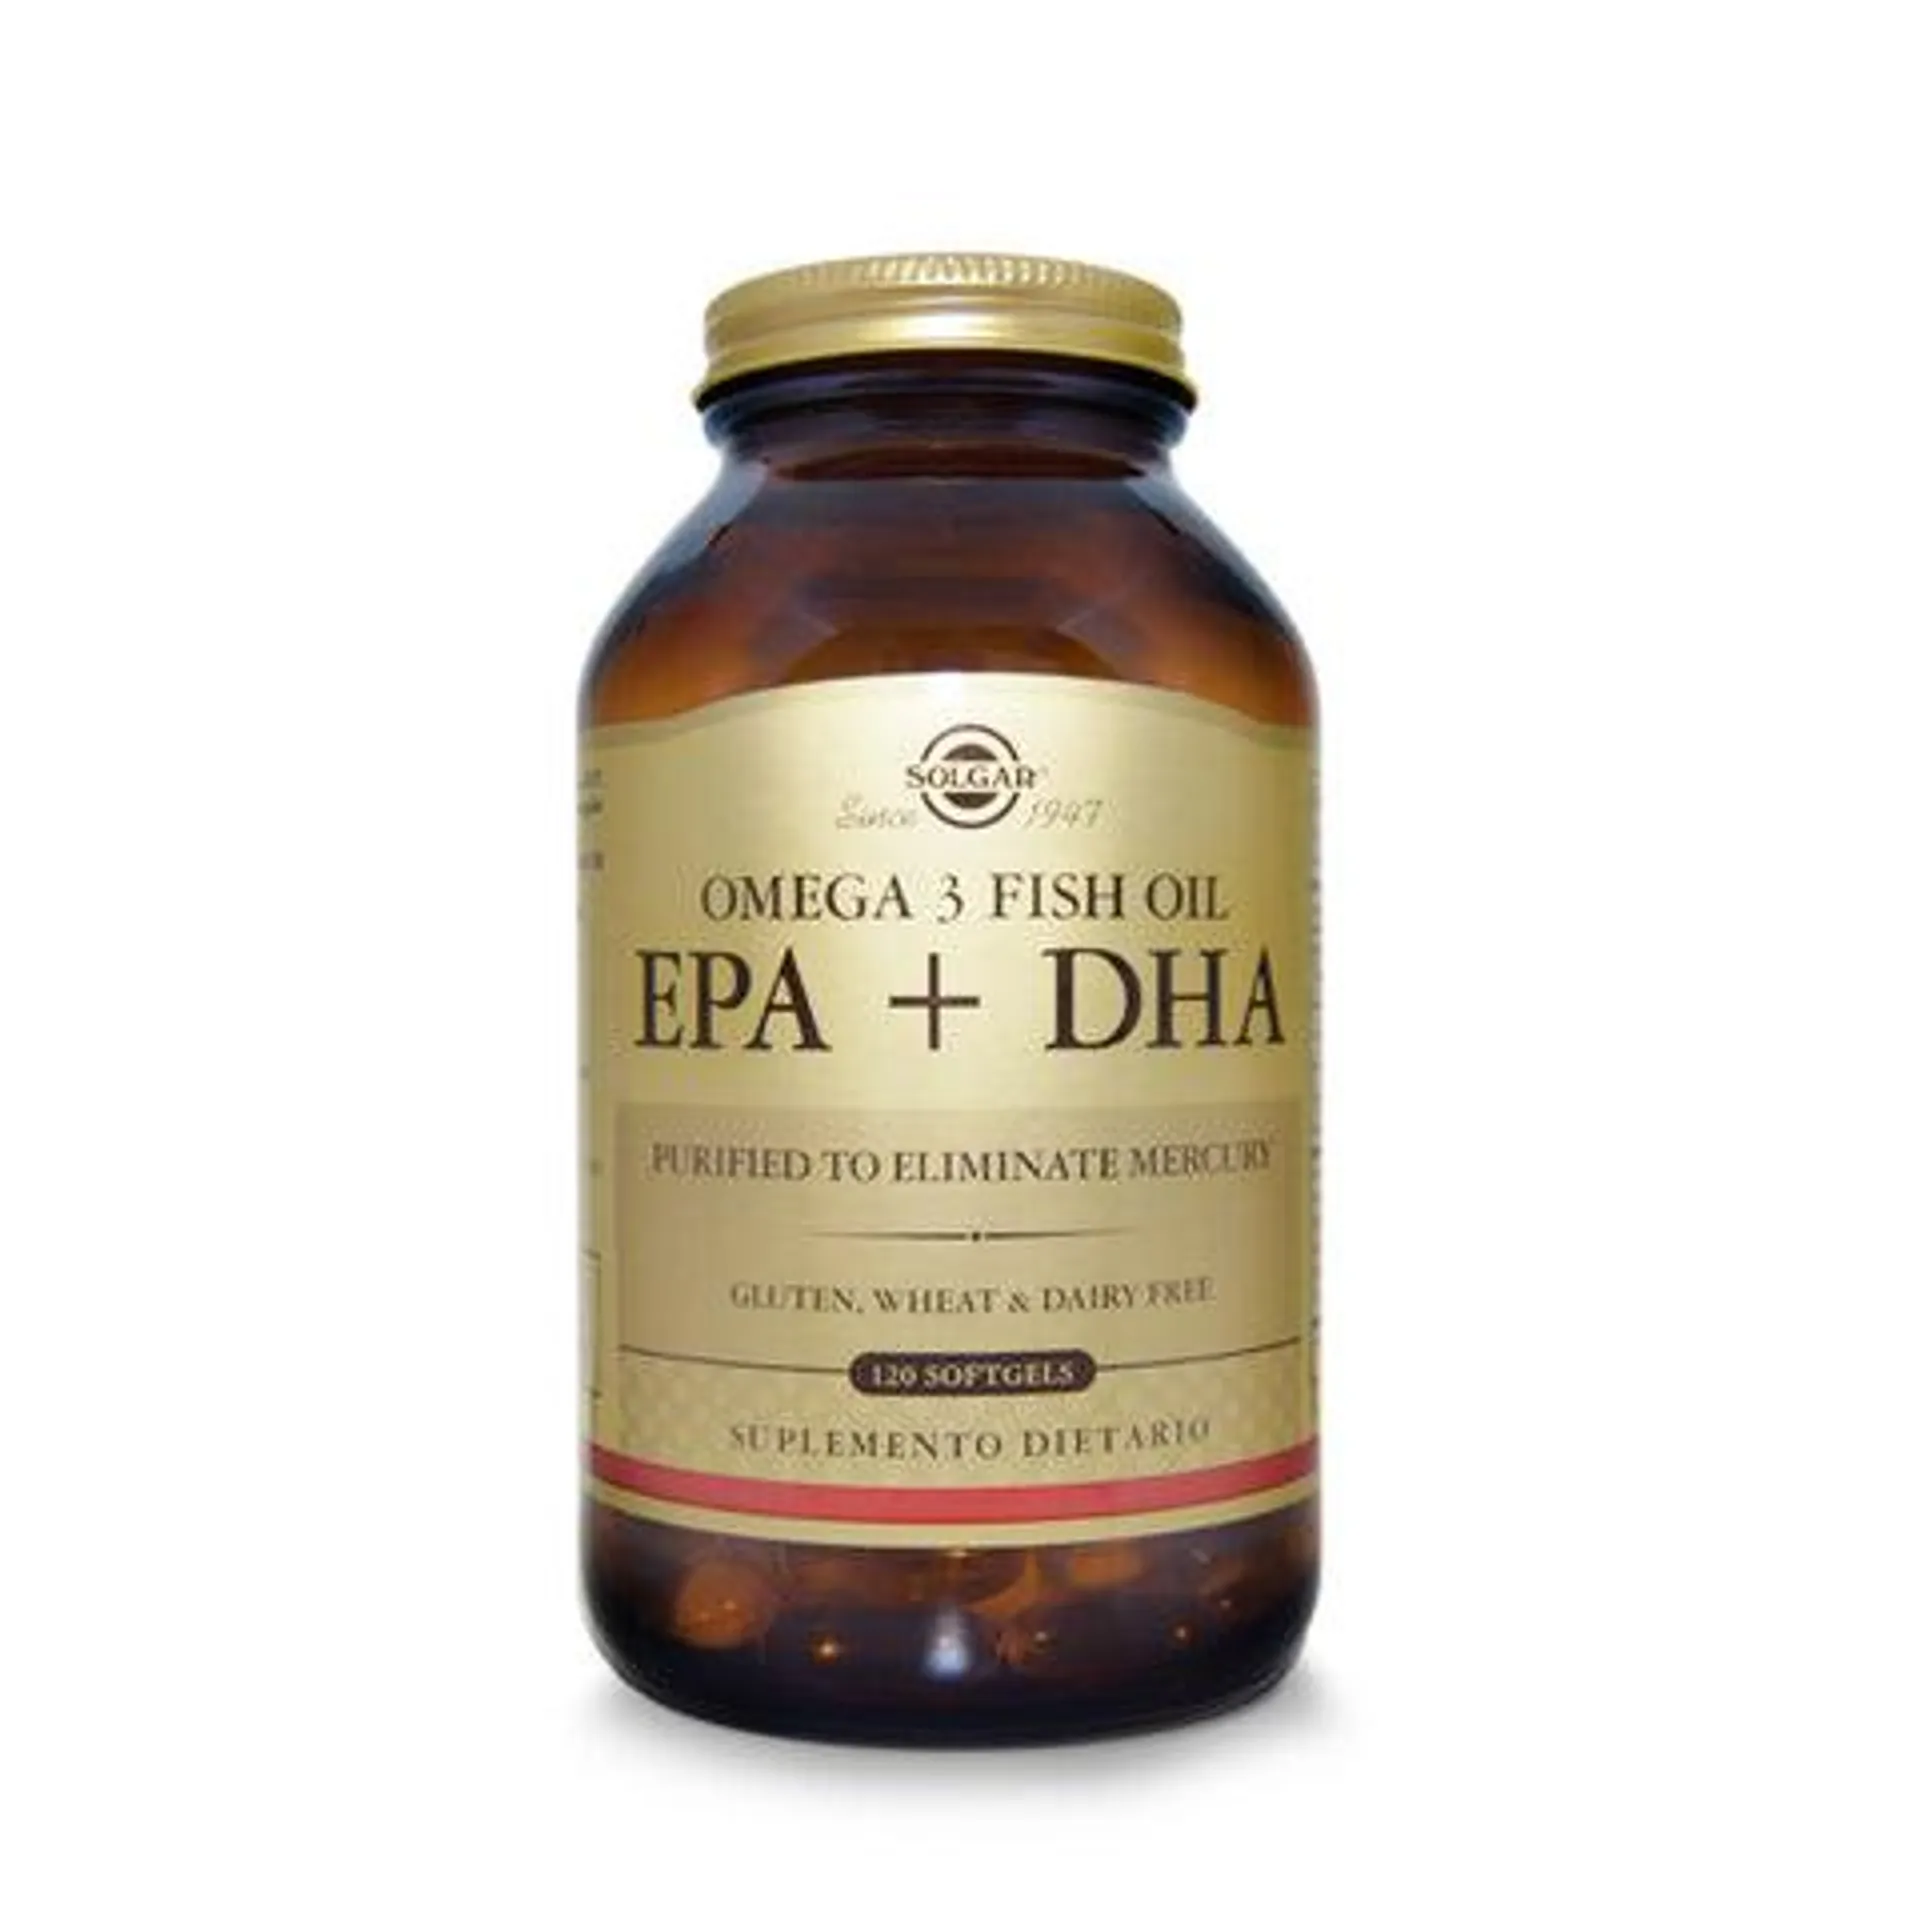 Omega 3 Fish Oil EPA +DHA x 120 Softgels